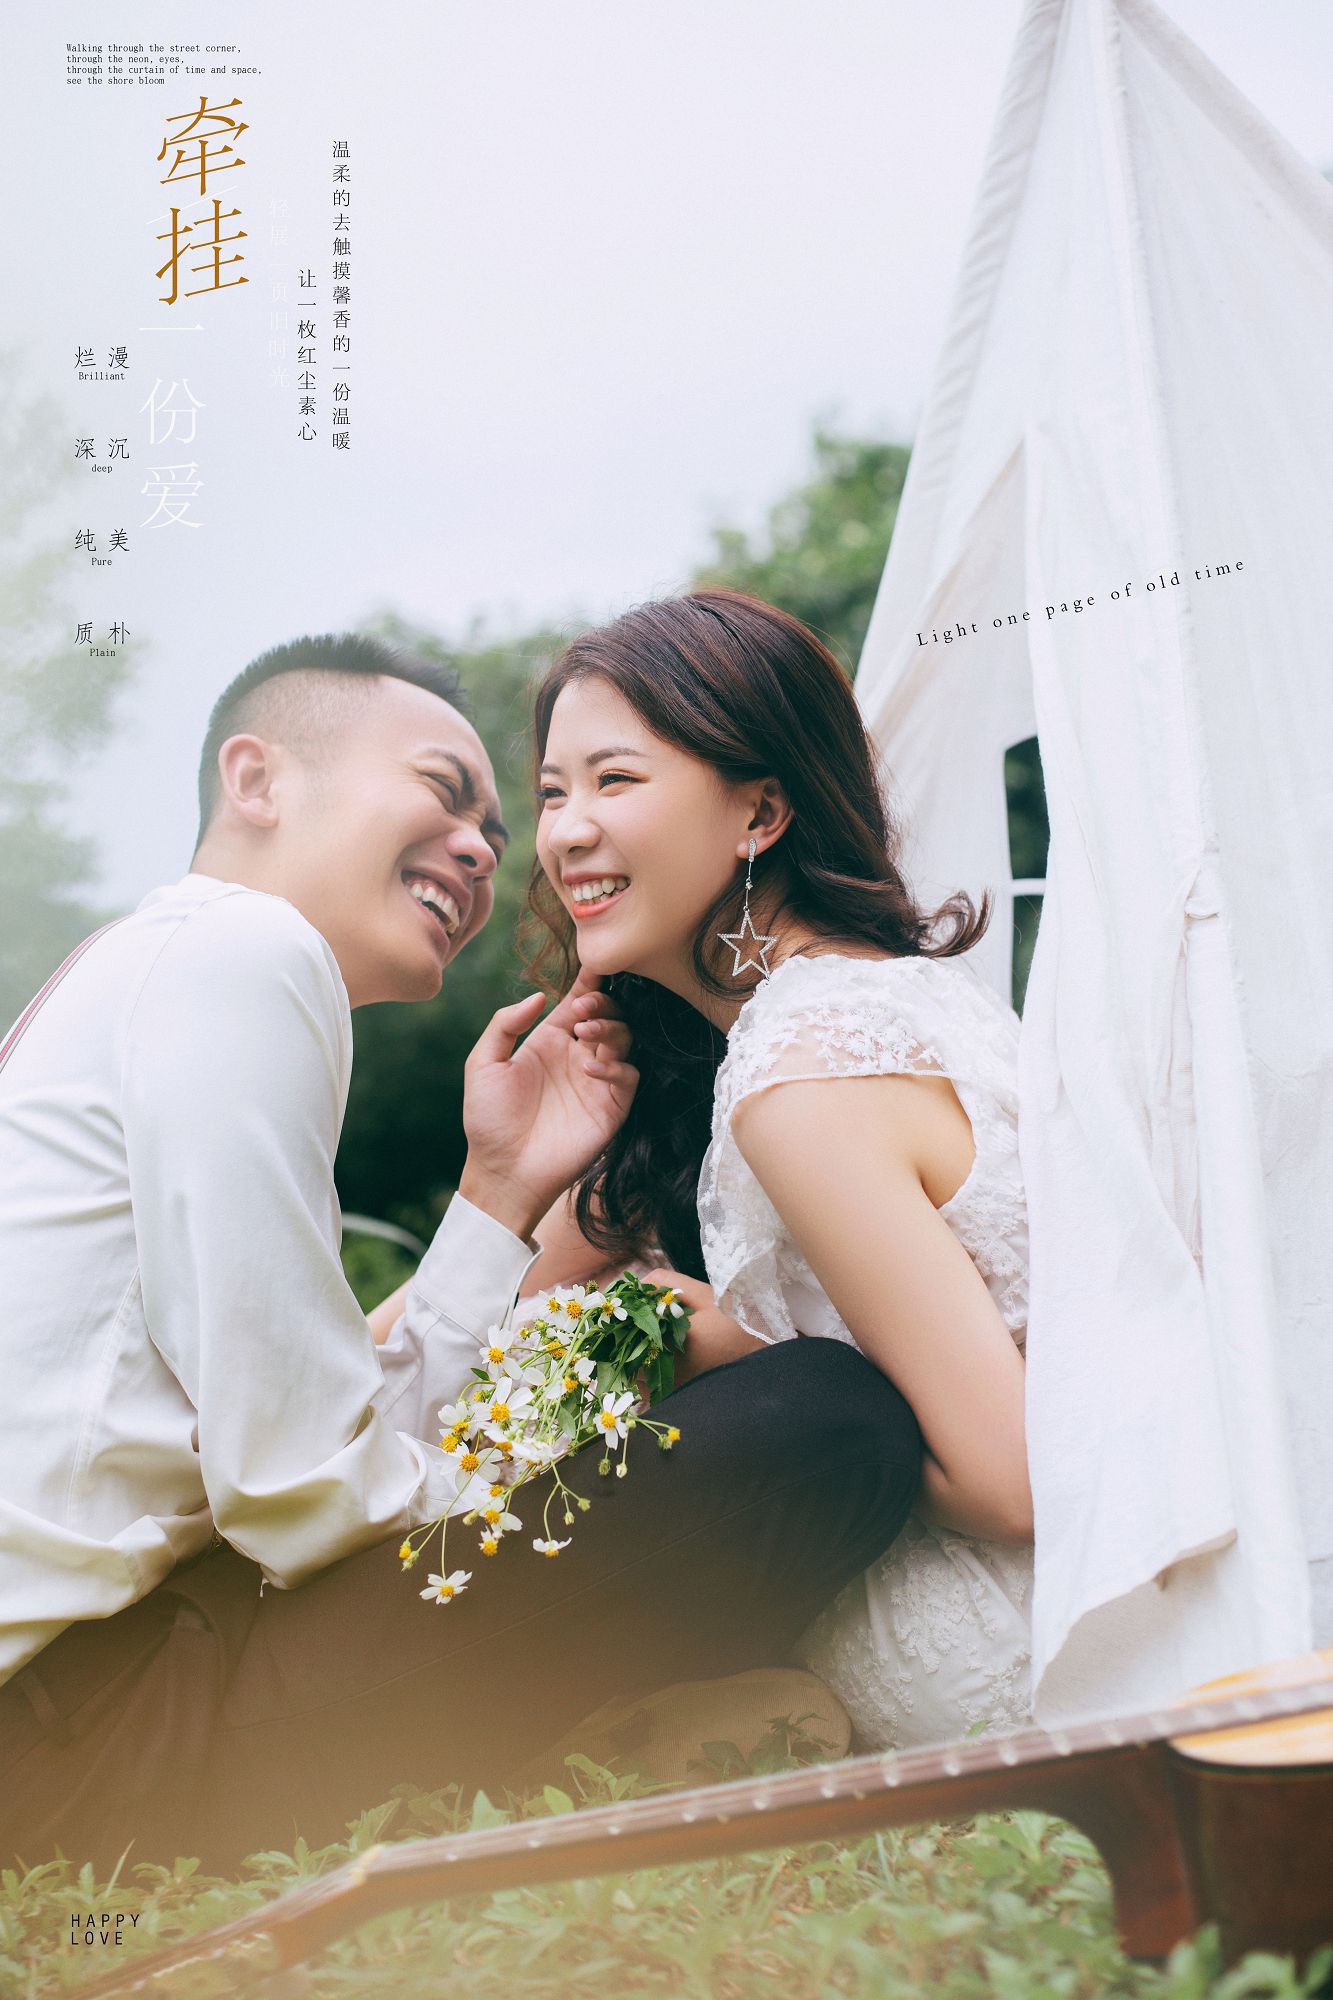 2019年7月广州婚纱照,江门婚纱照,婚纱照图片